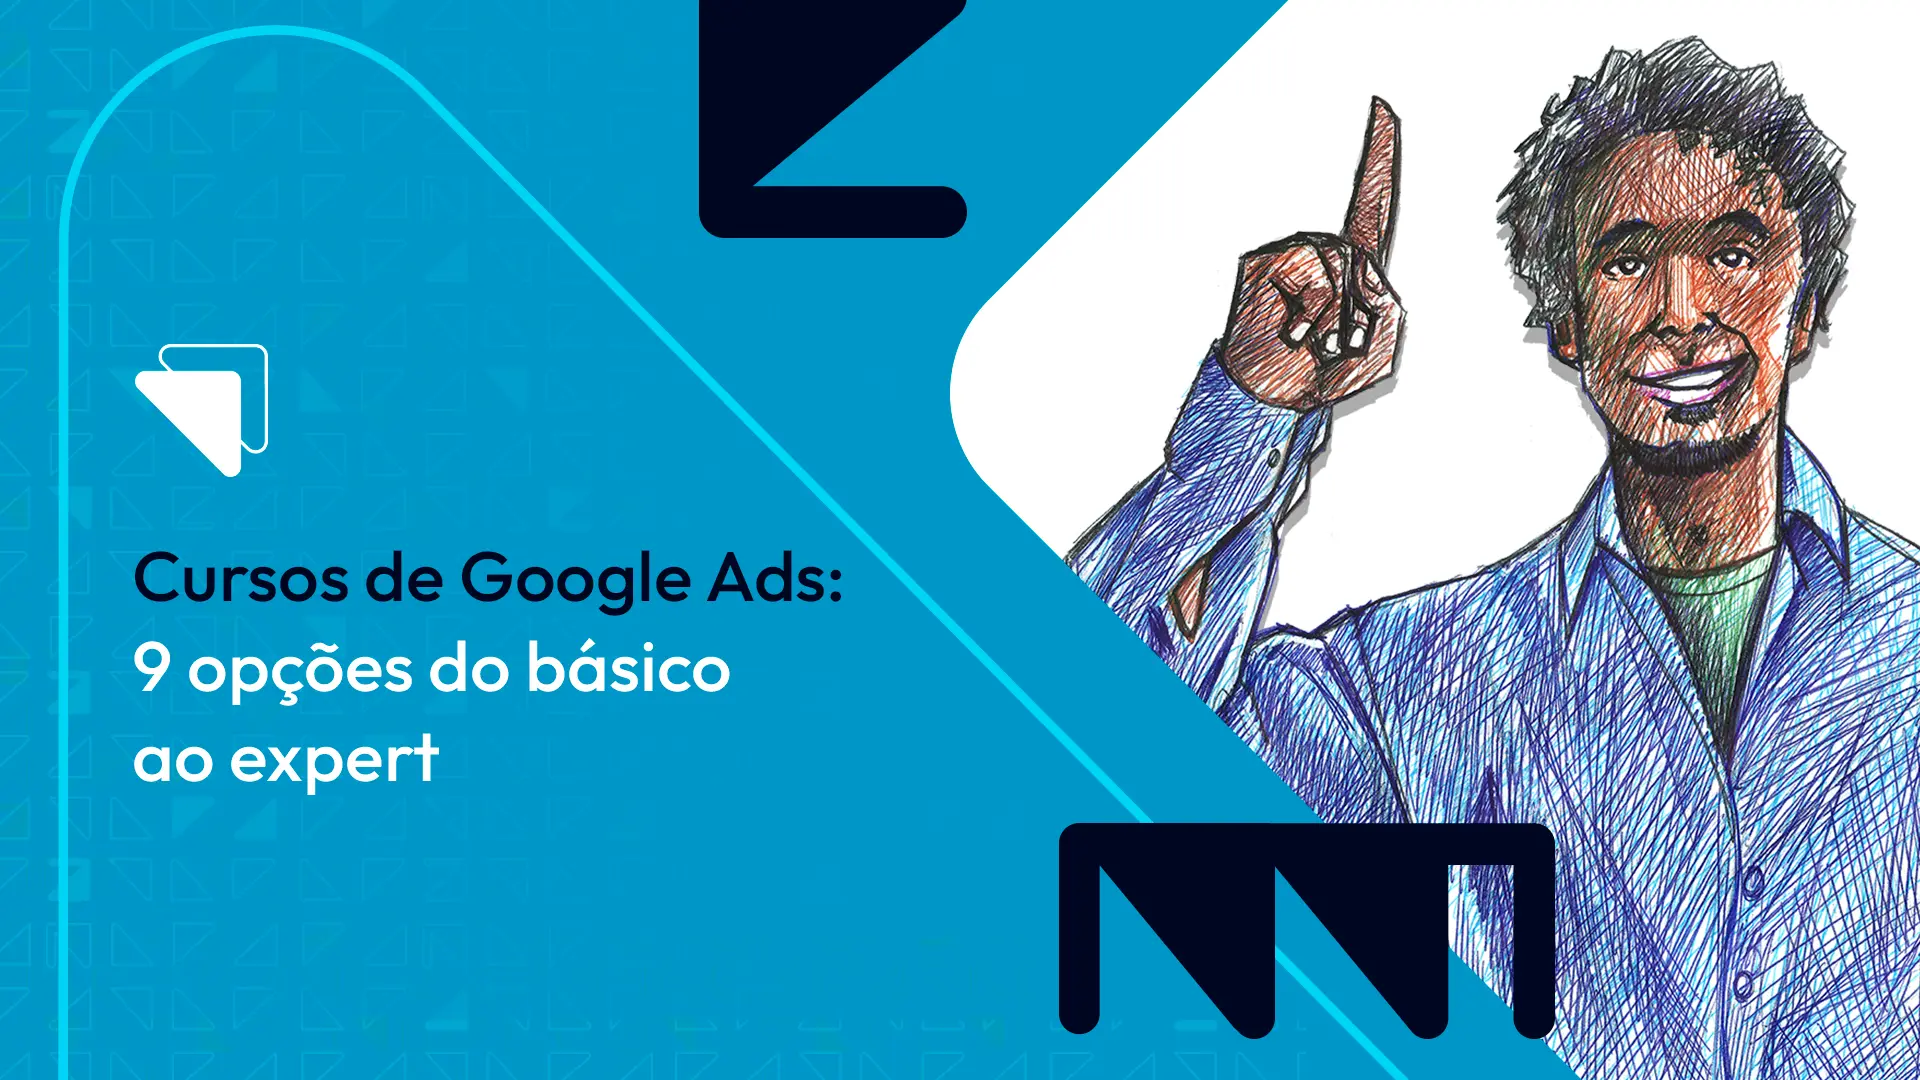 2 - Gestão de campanhas com o Google AdWords - Avaliação - Marketing Digital